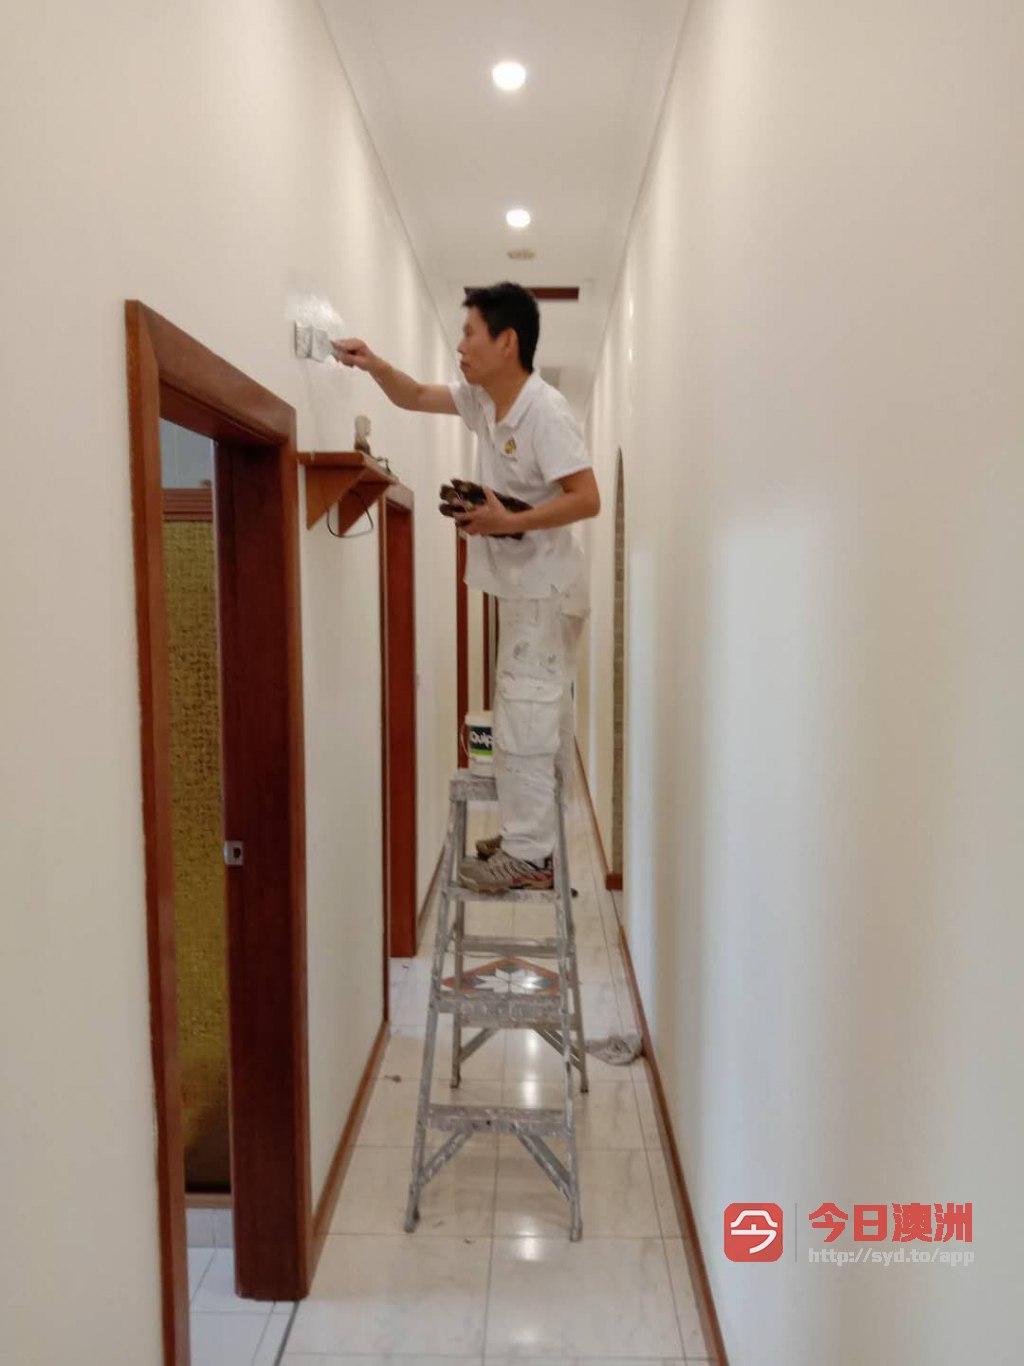  低价持证专业油漆各种木门清油内外墙油漆新老房子油漆